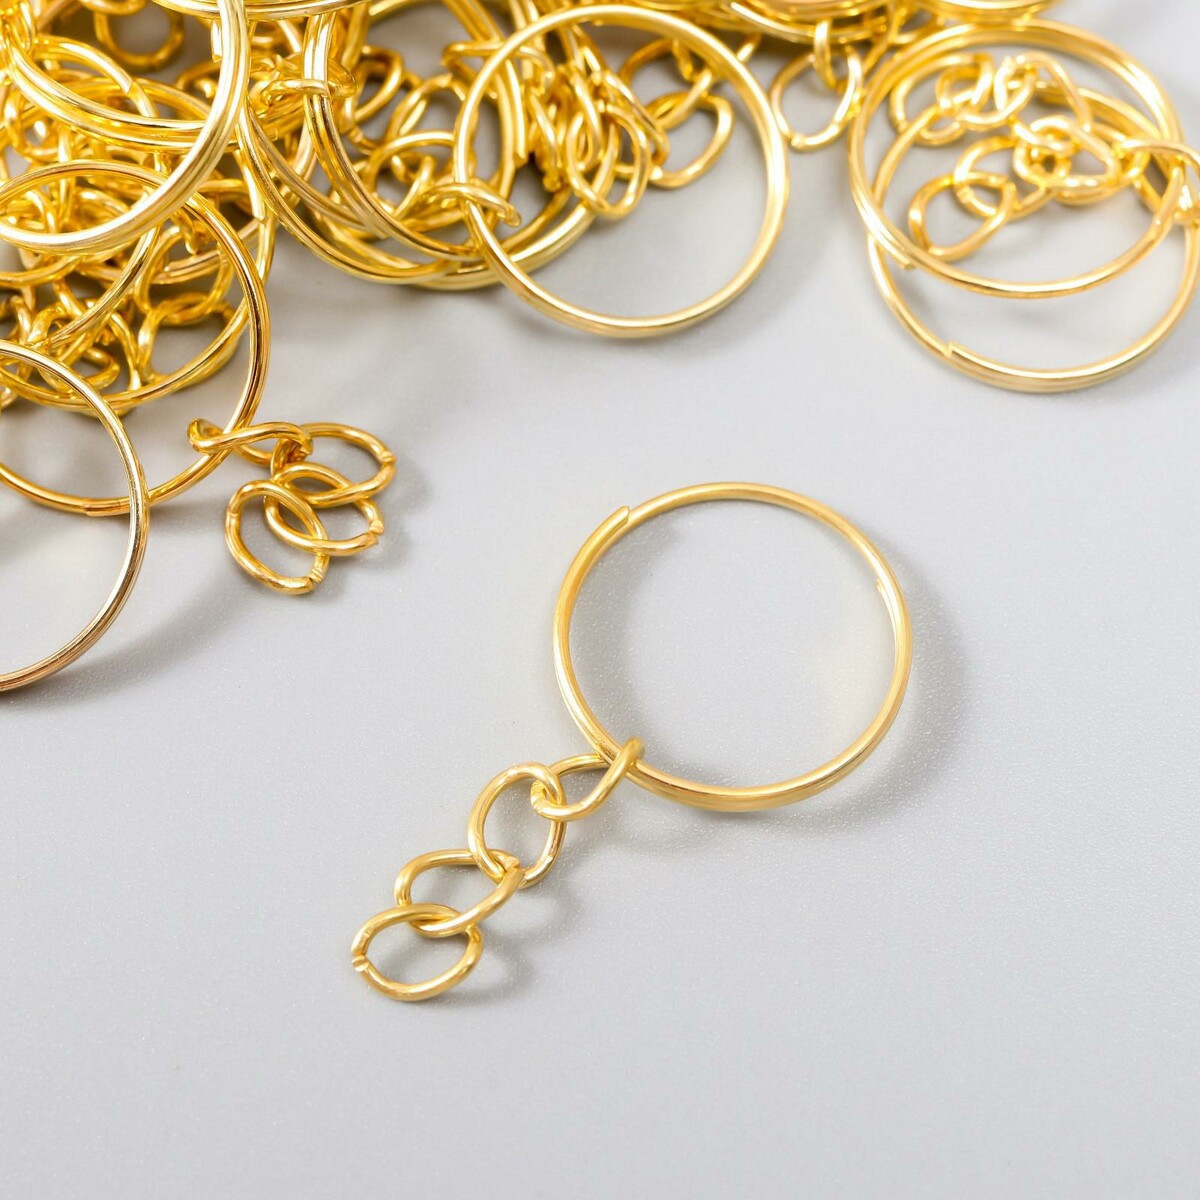 Основа для брелока кольцо металл с цепочкой золото 1,8х1,8 см набор 40 шт декор настенный металл акцент золото и чёрный 2 м